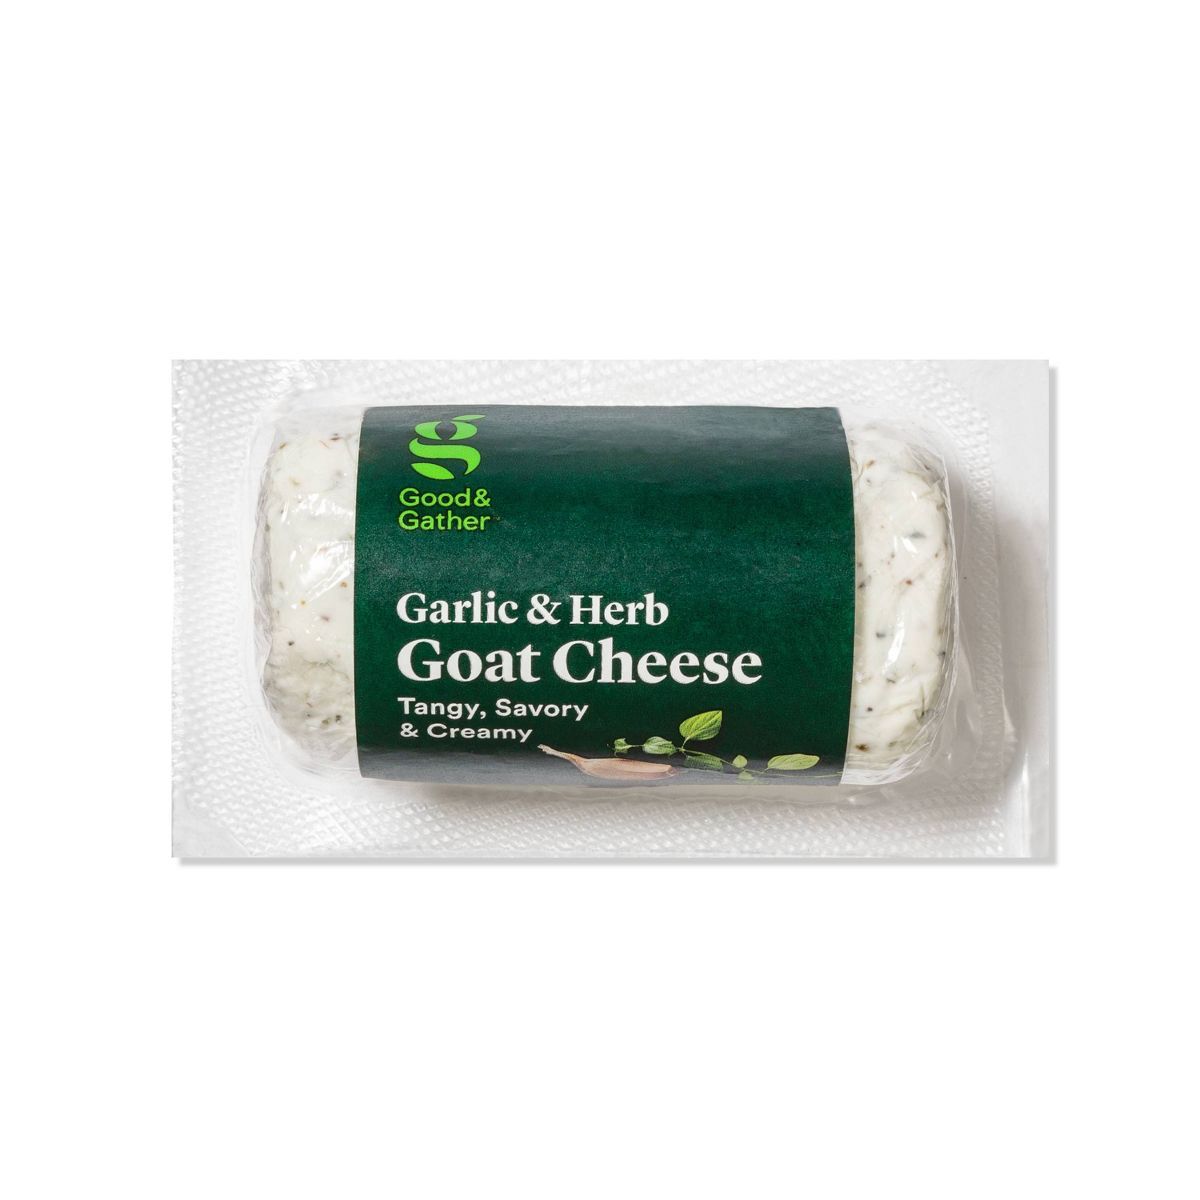 Garlic & Herb Goat Cheese - 4oz - Good & Gather™ | Target